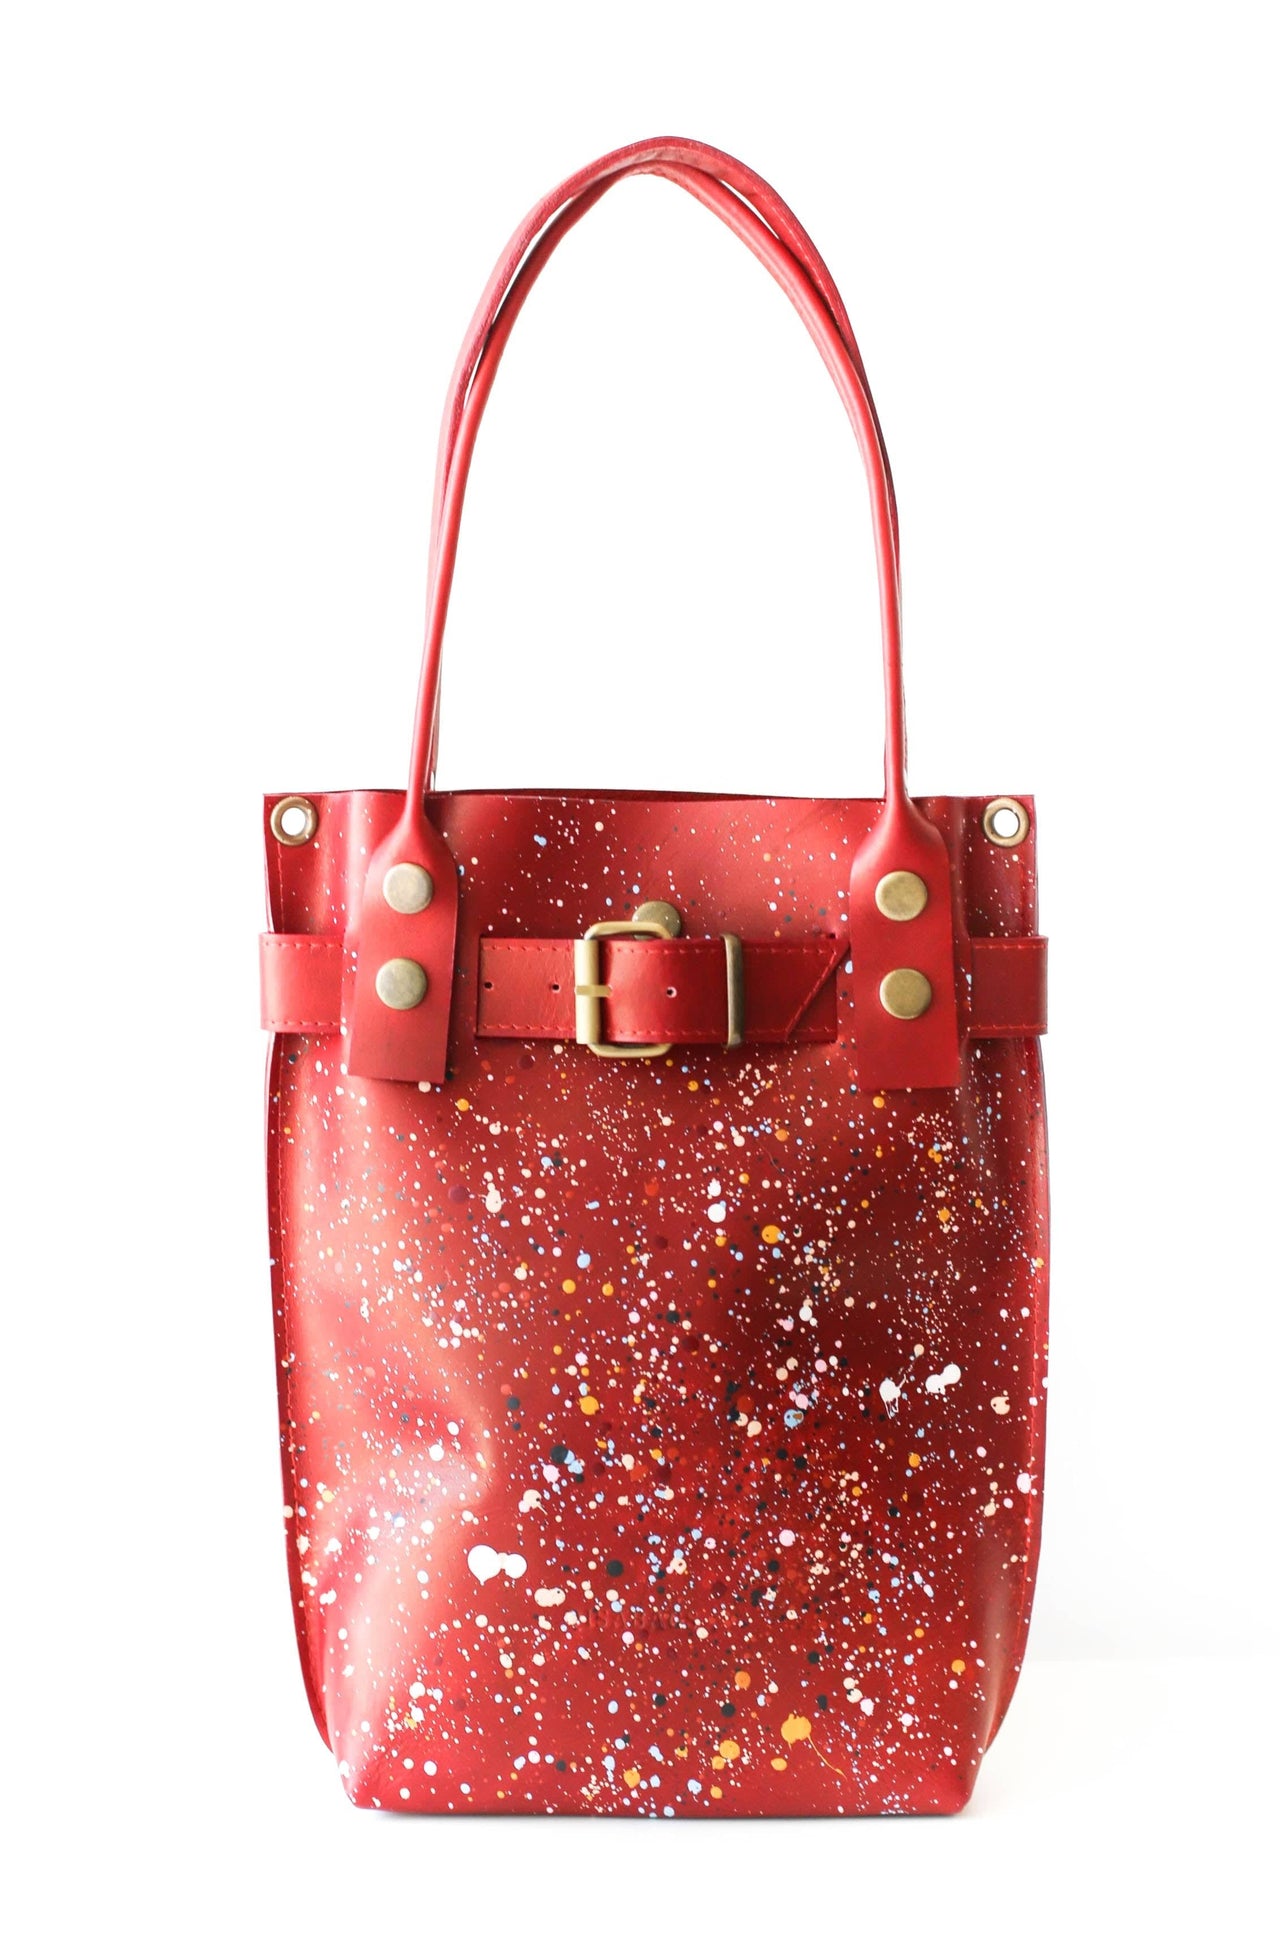 Designer handbags for women